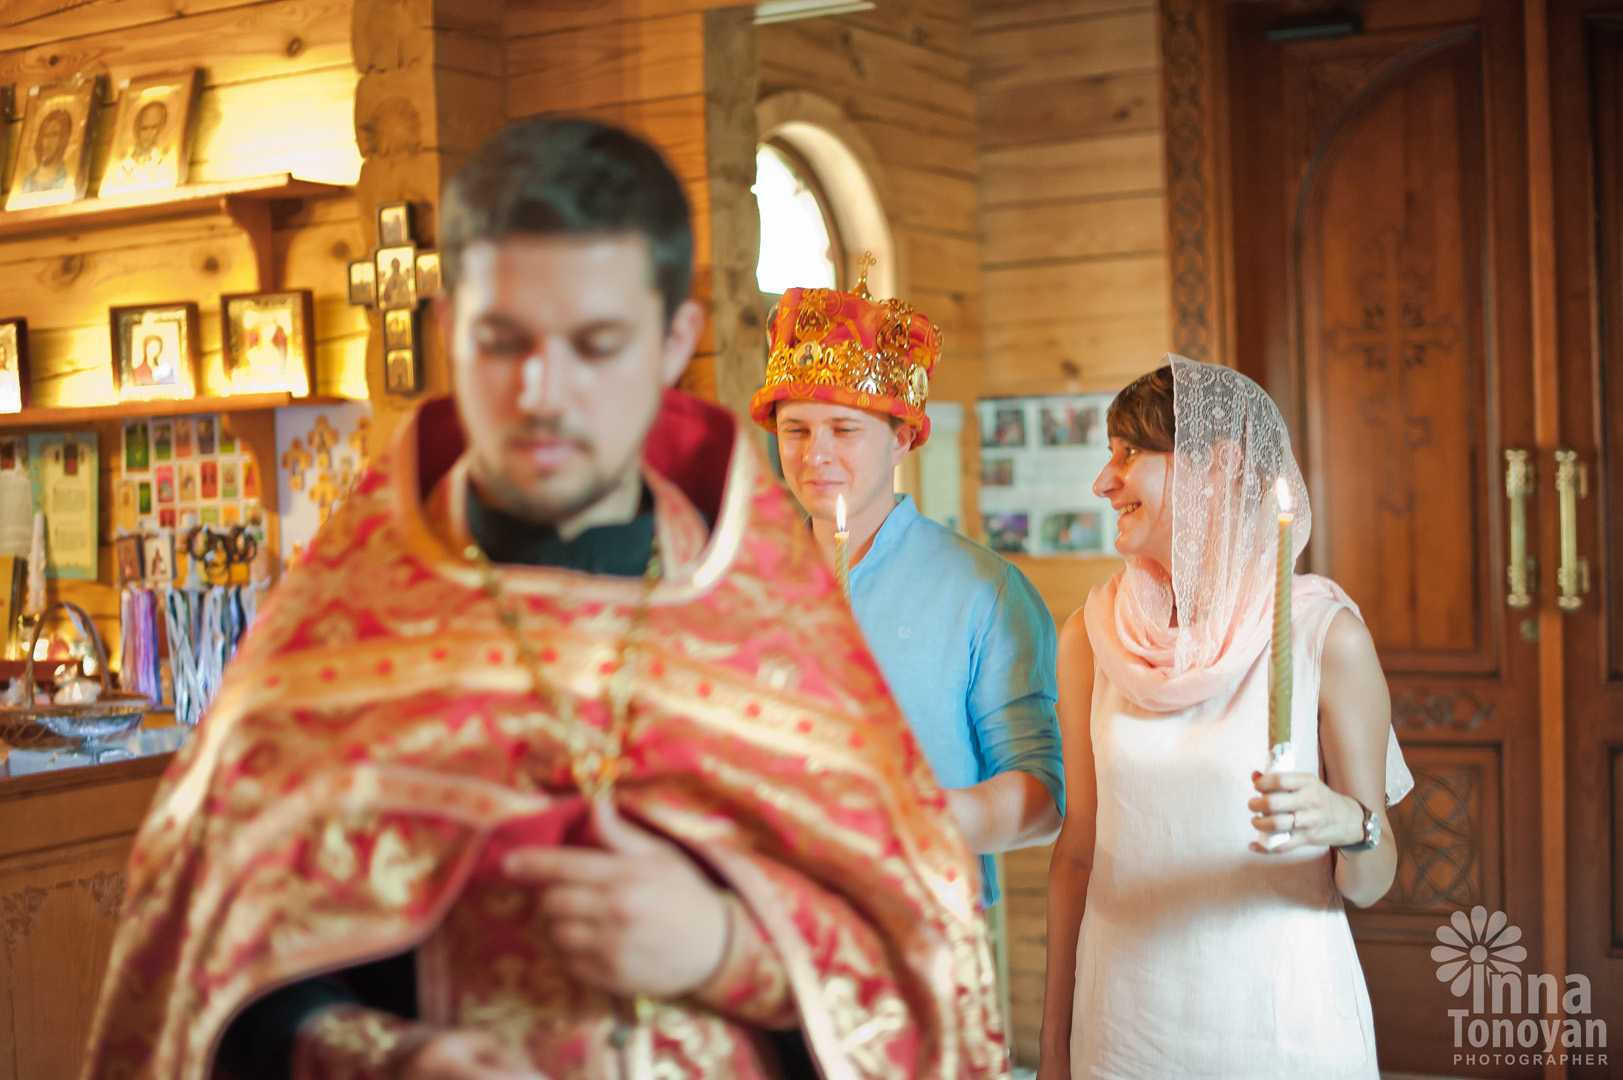 Венчание в православной церкви правила таинства обряда, как проходит и что дарят